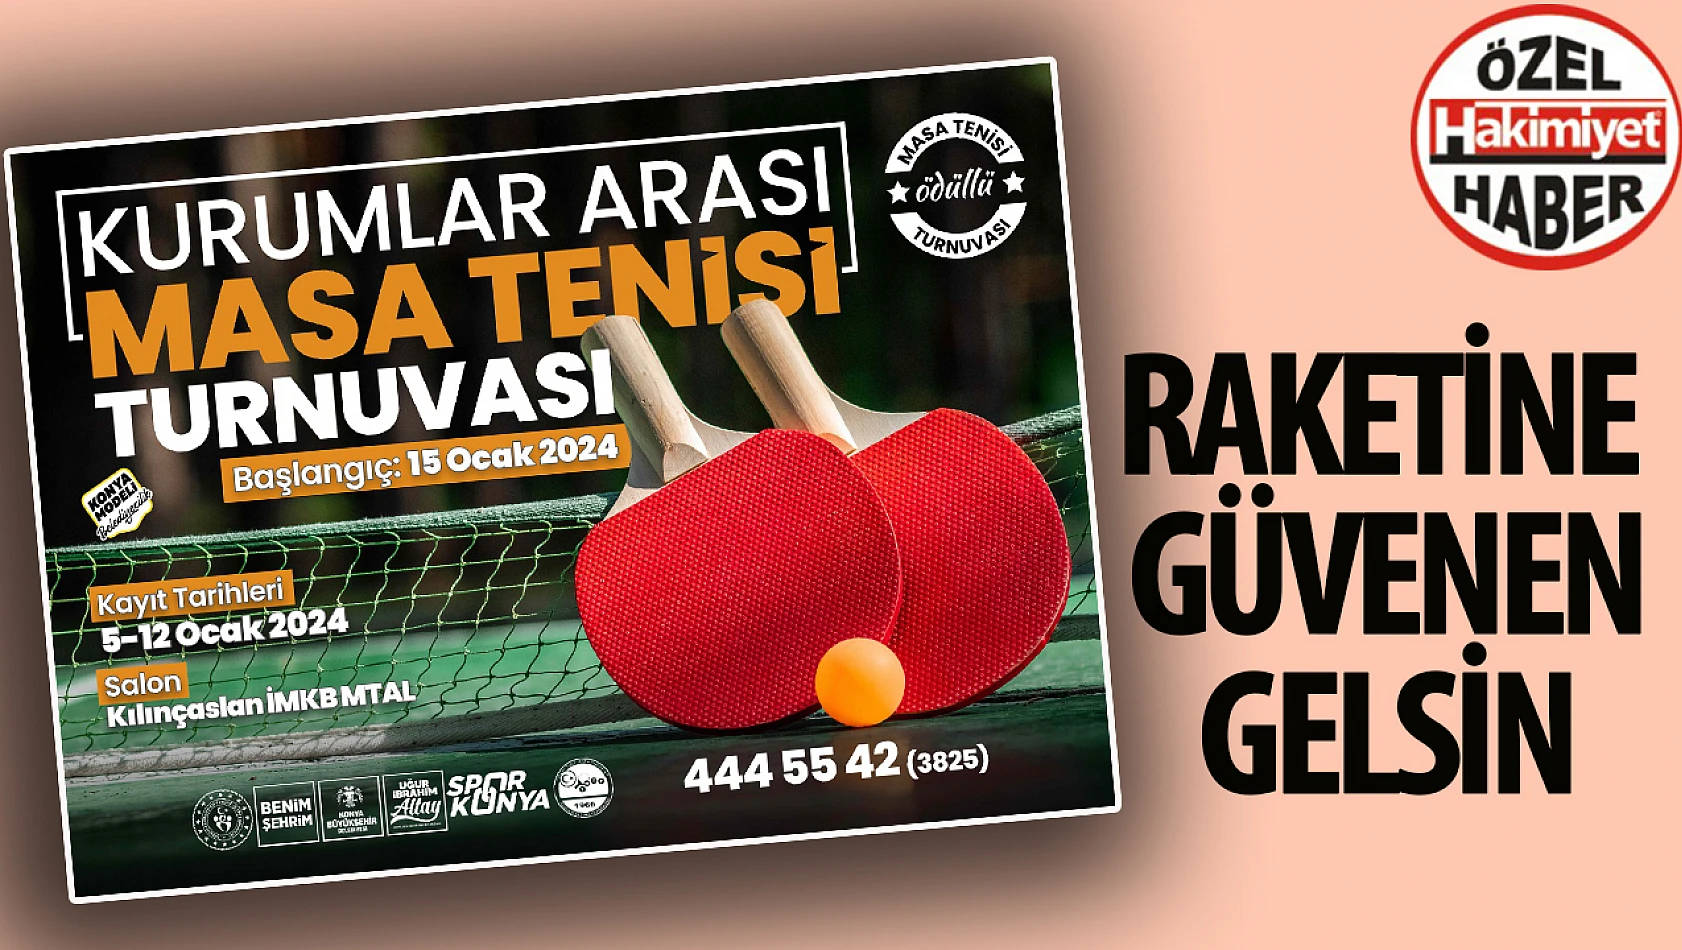 Konya Büyükşehir Belediyesi, Kurumlar Arası Masa Tenisi Turnuvasına Ev Sahipliği Yapıyor